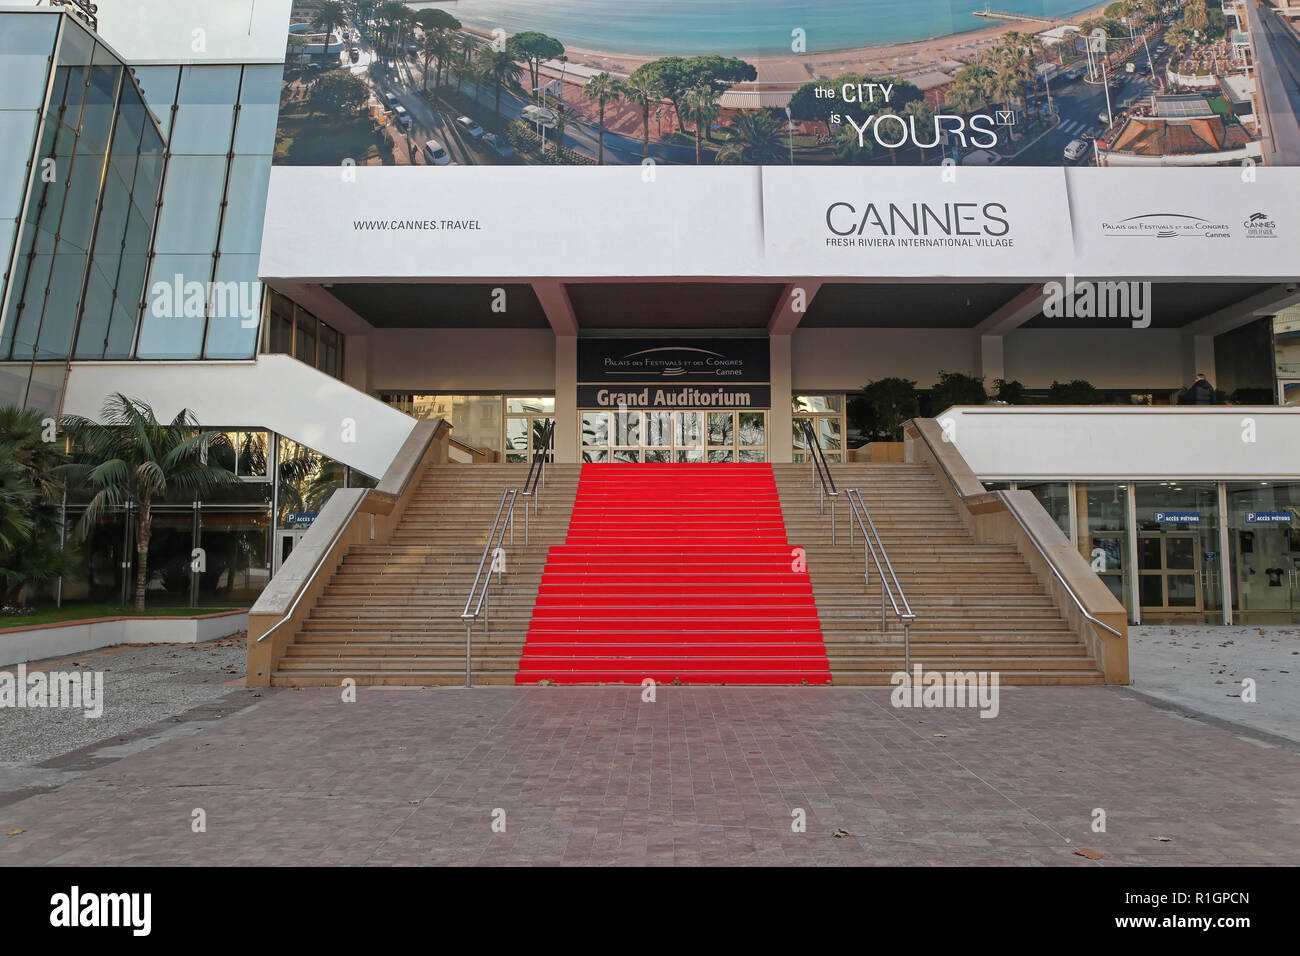 Cannes, Francia - 20 Gennaio 2012: Grand Auditorium Cannes Red Carpet scalinata del Palais des Festivals et des Congrès di Cannes, Francia. Foto Stock